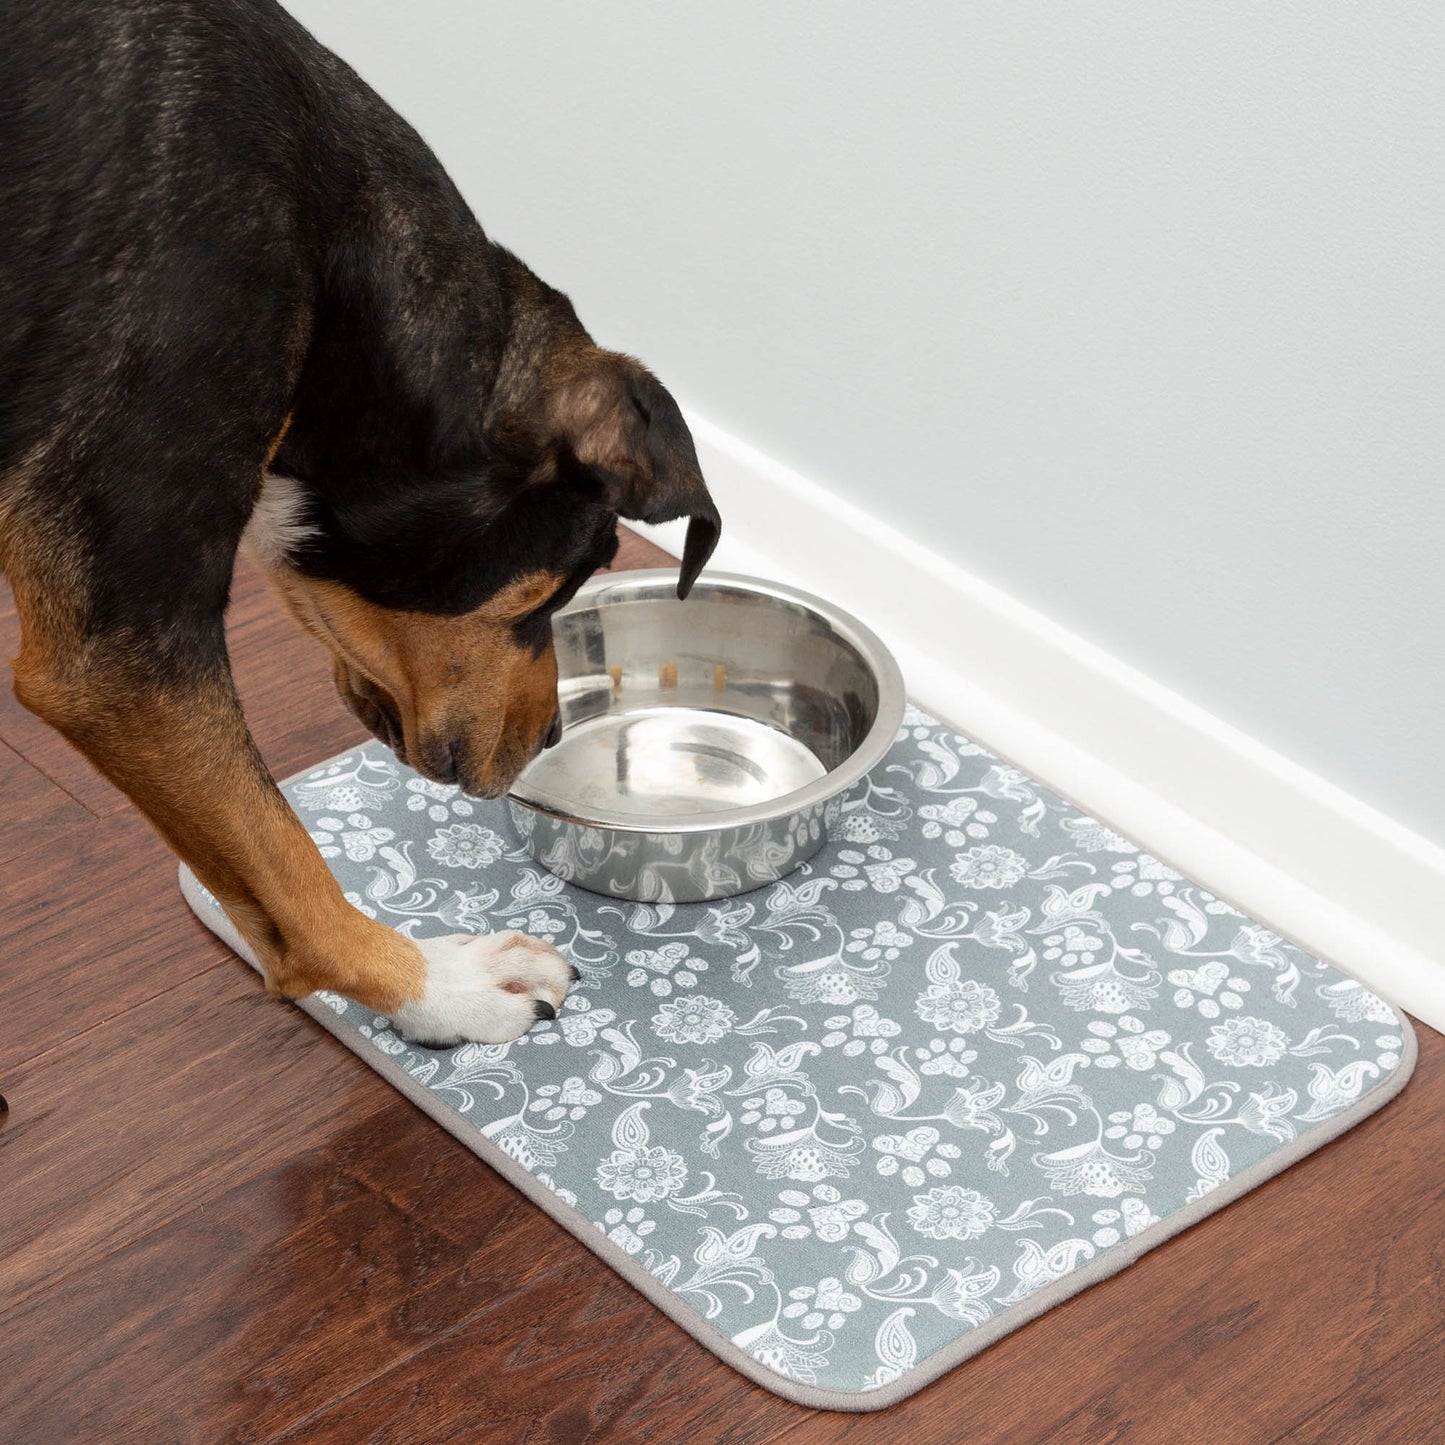 Messy Paws Absorbent Pet Dish Mat